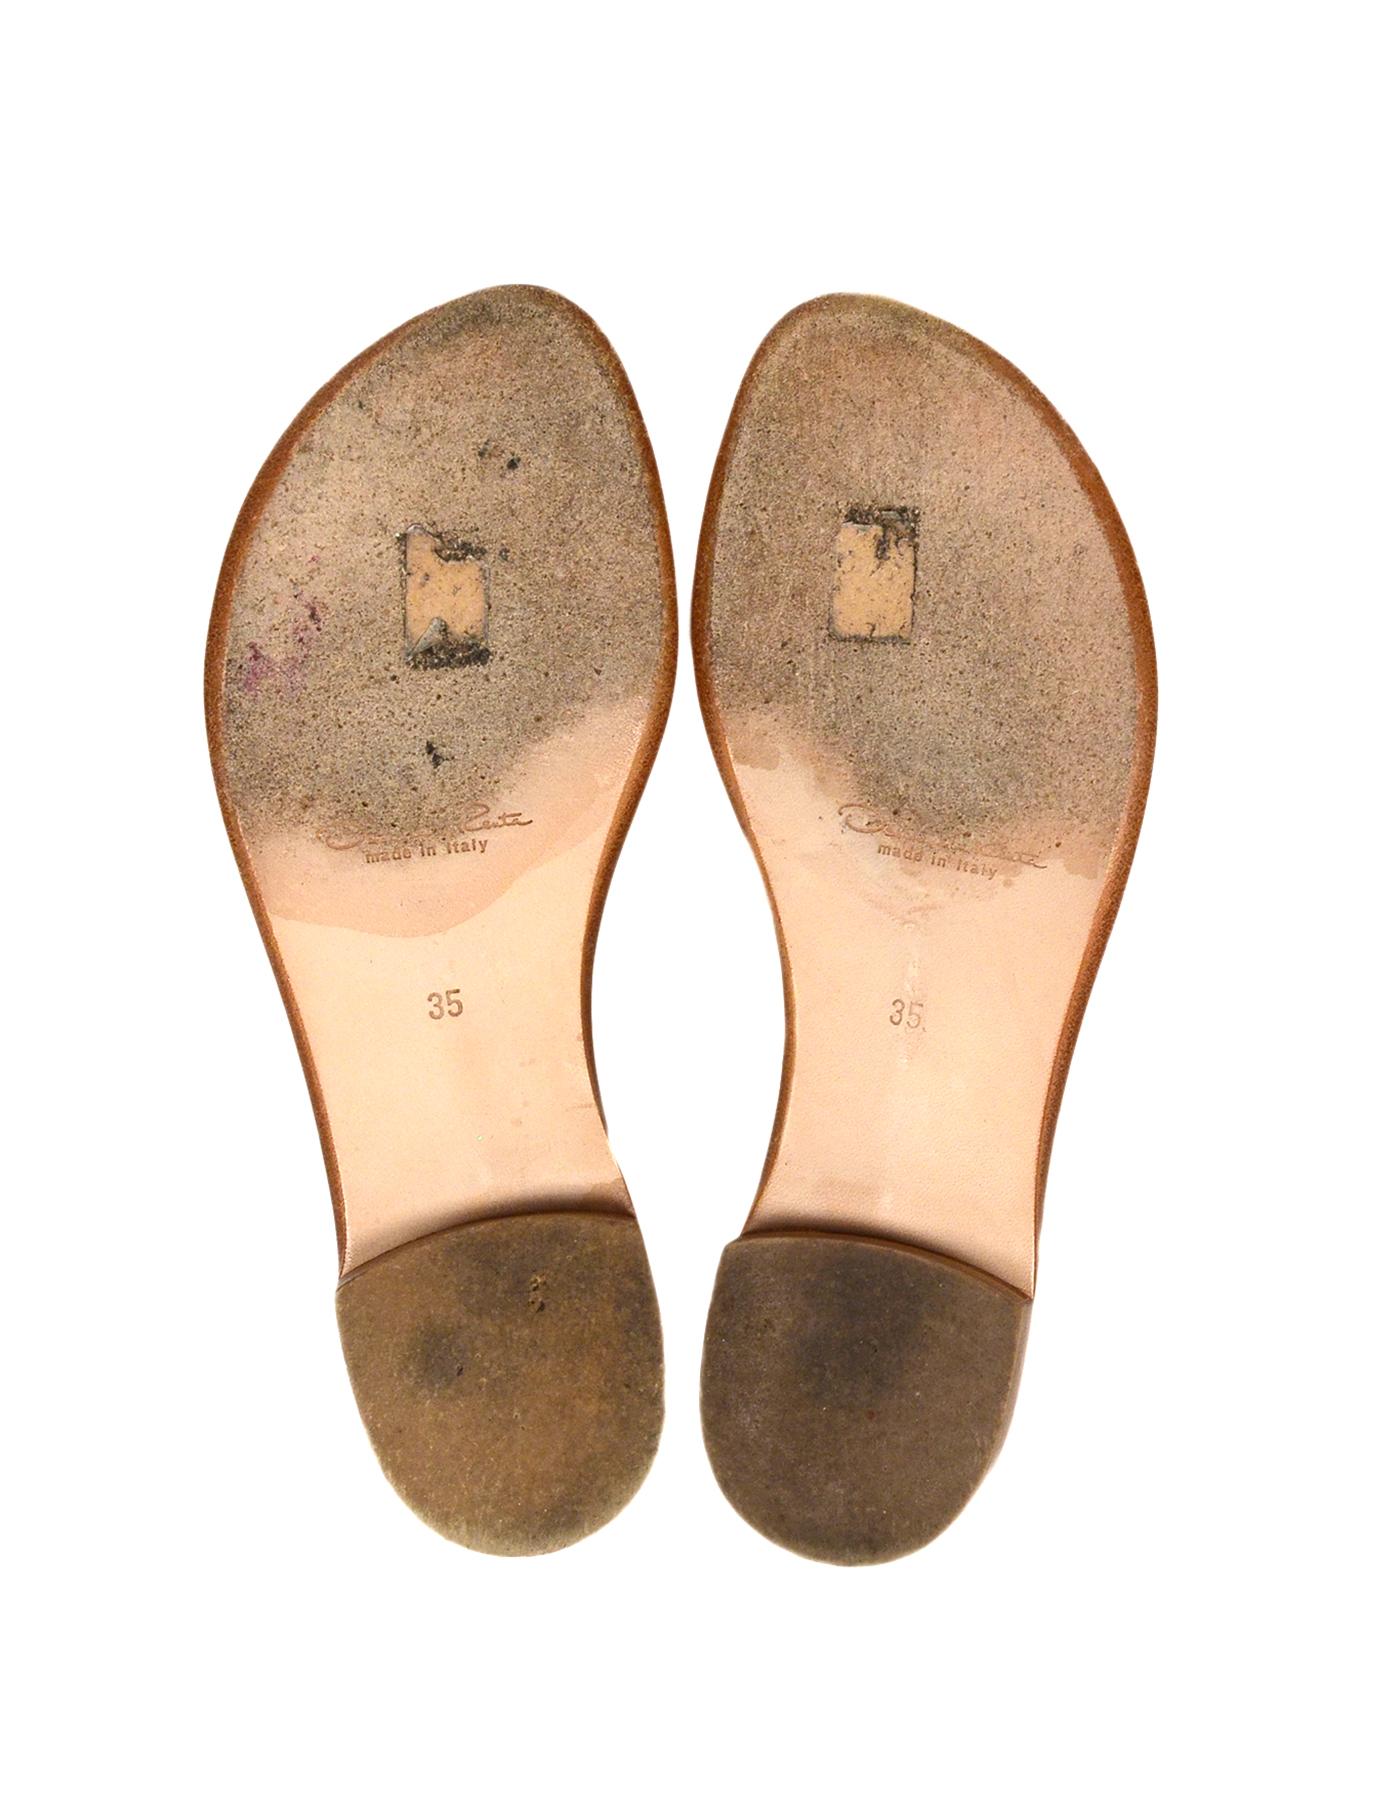 Oscar de la Renta Beige Suede Embellished Thong Sandals Sz 35 1